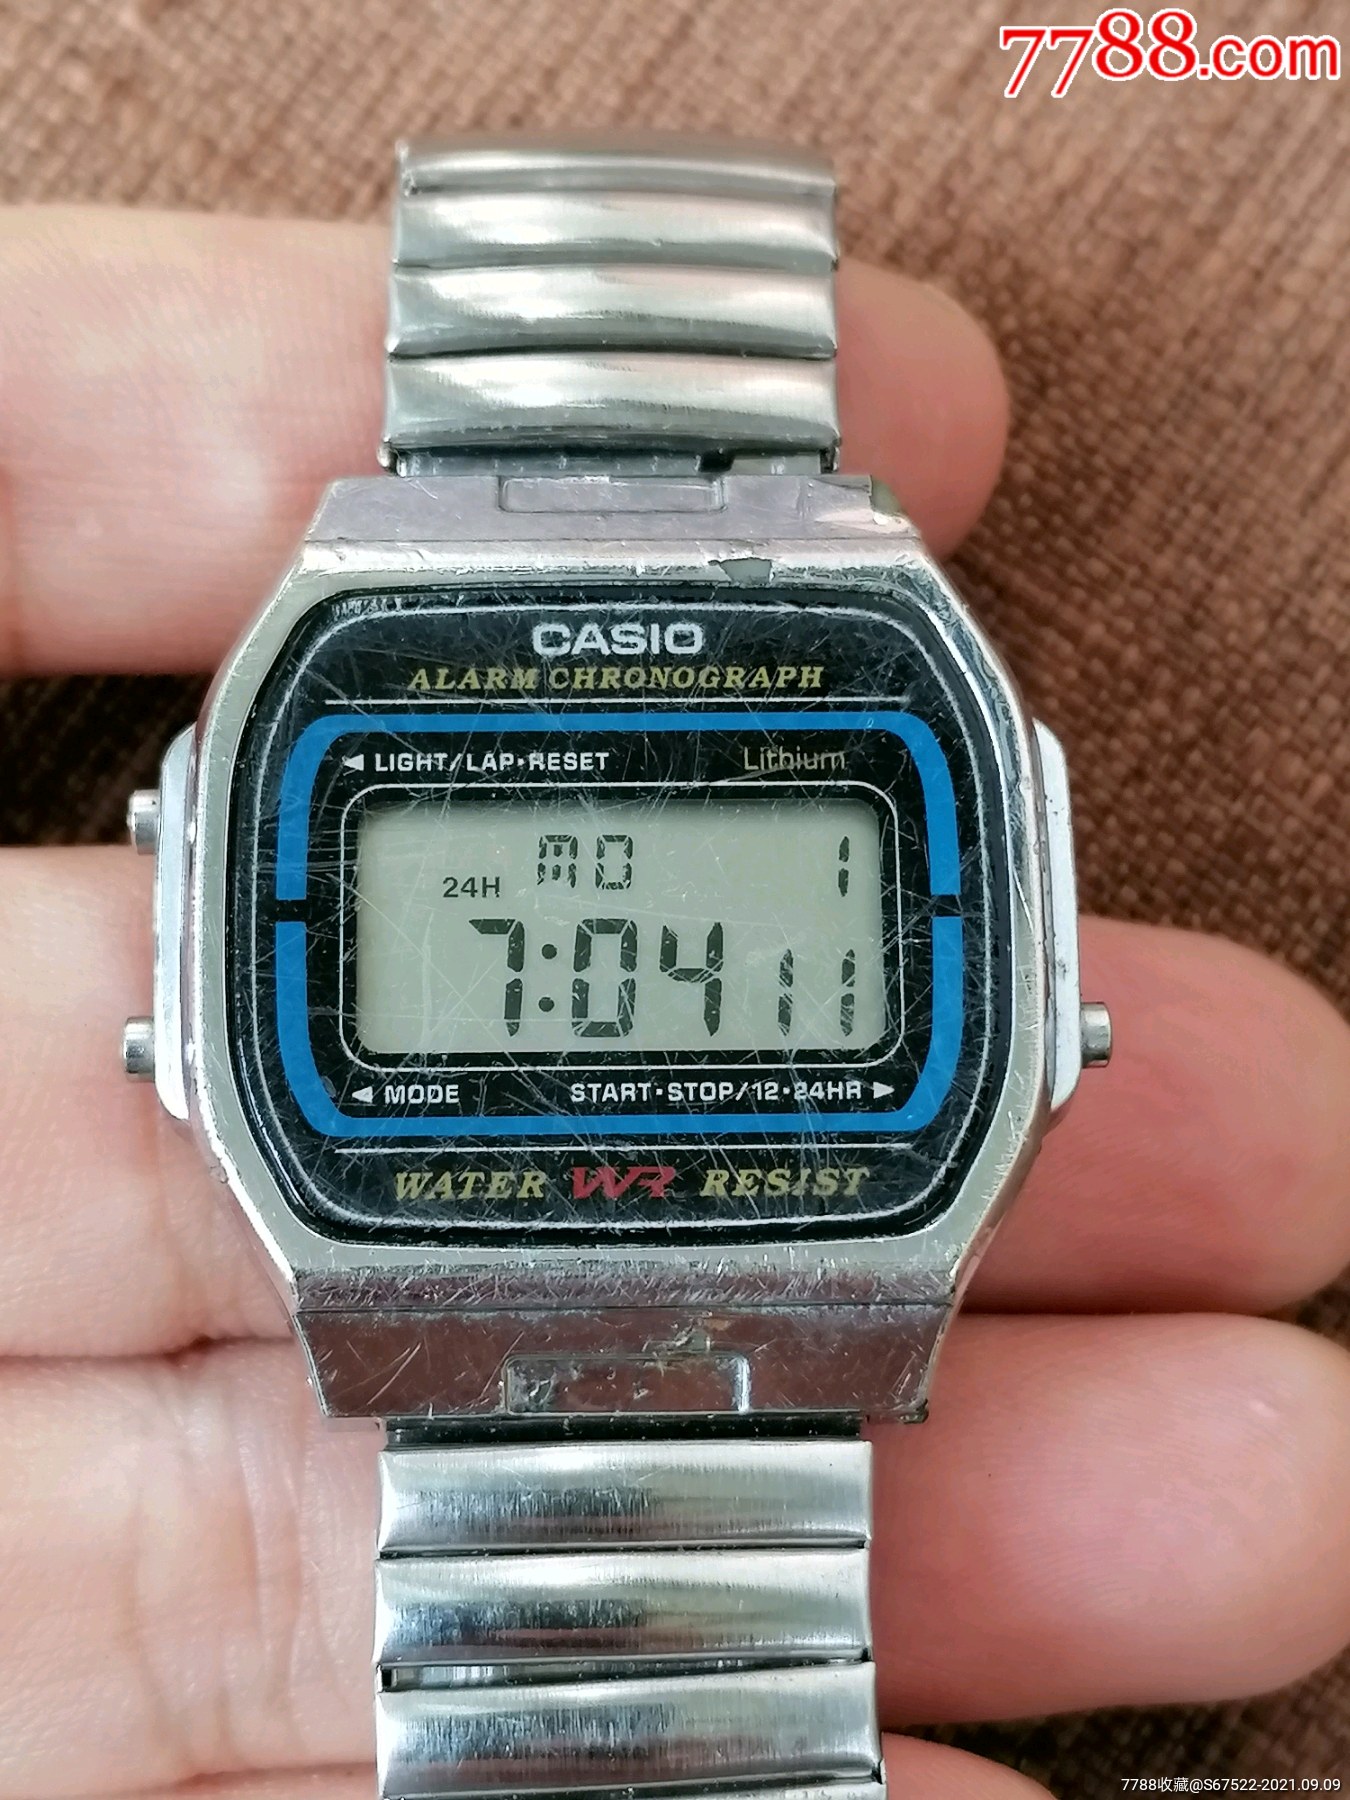 casl0电子手表价格图片图片